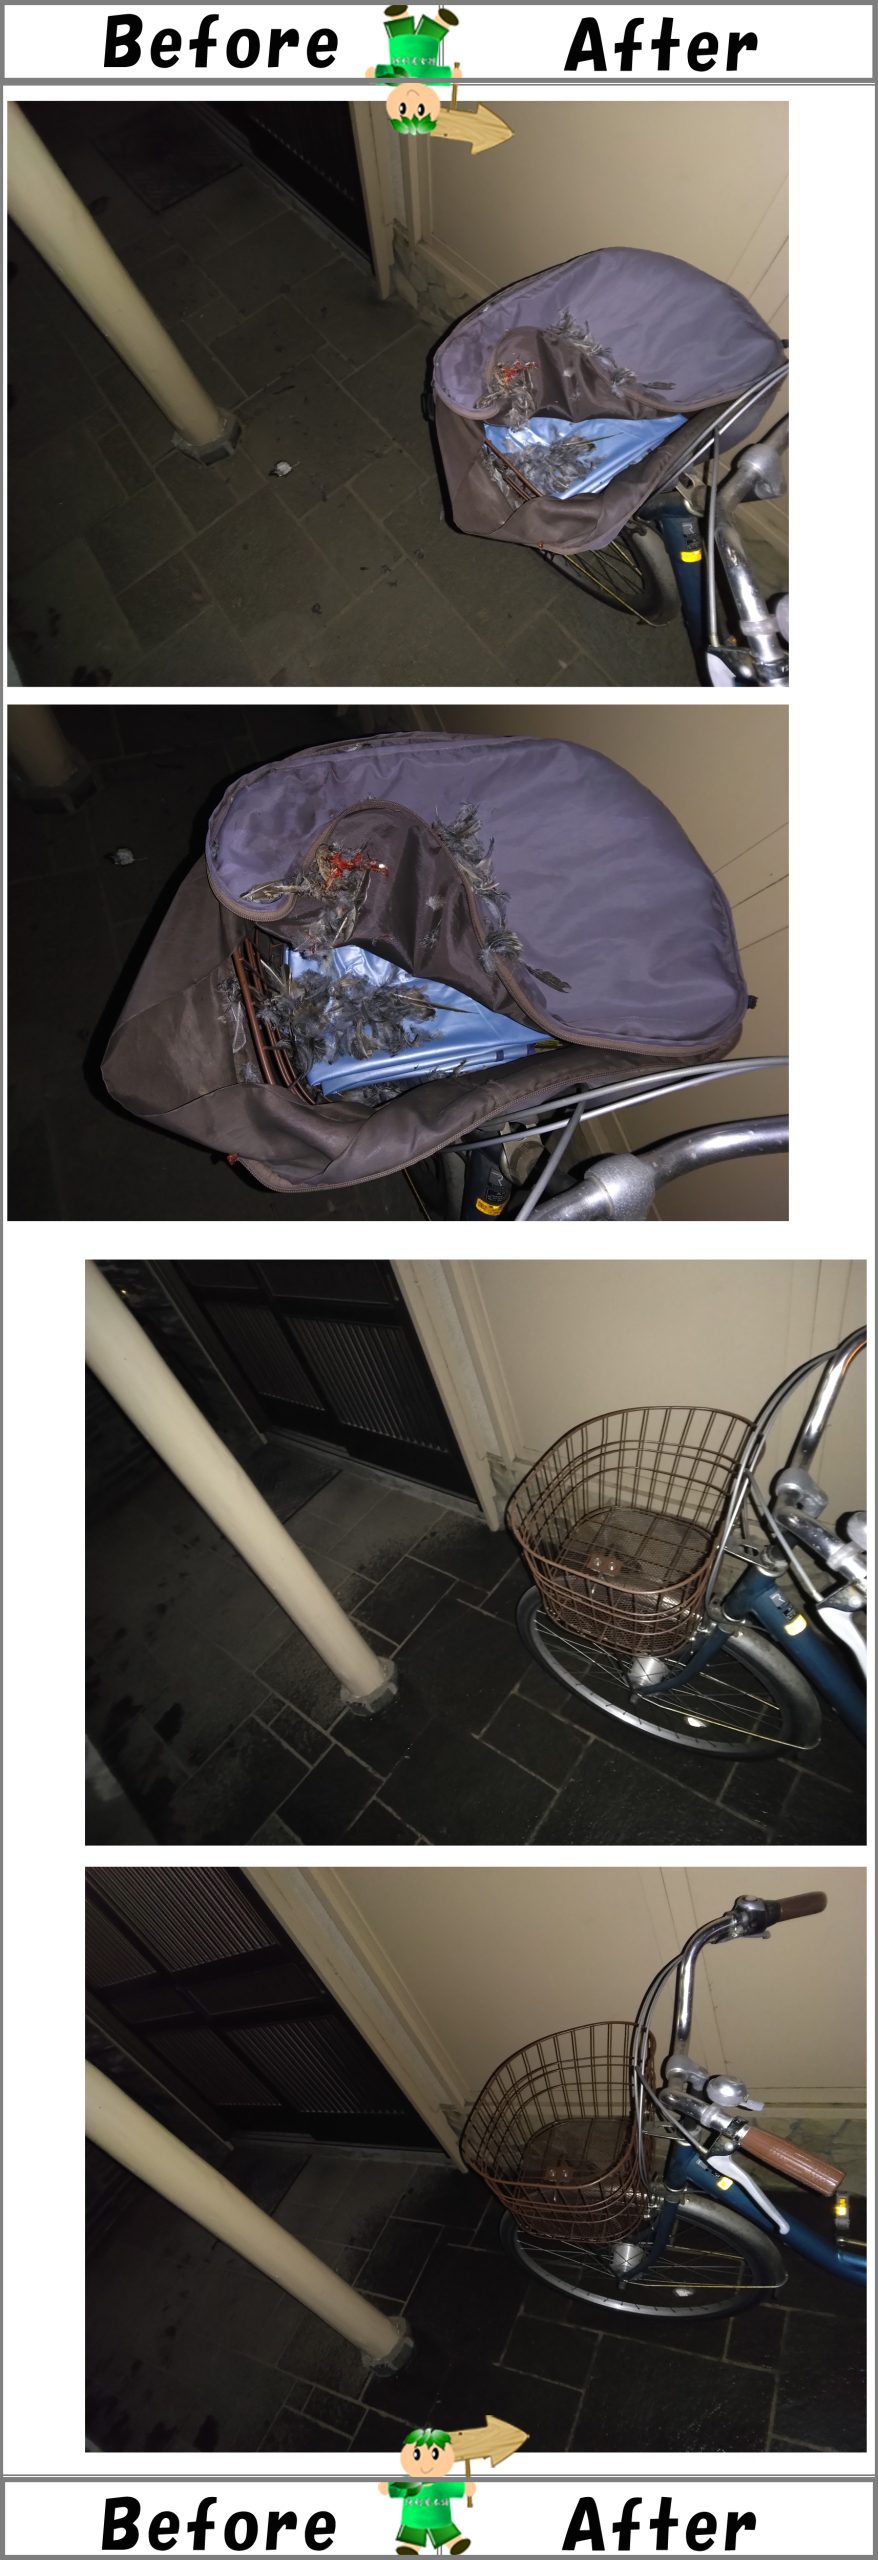 自転車かご内の鳥の死骸回収・消毒洗浄クリーニング作業